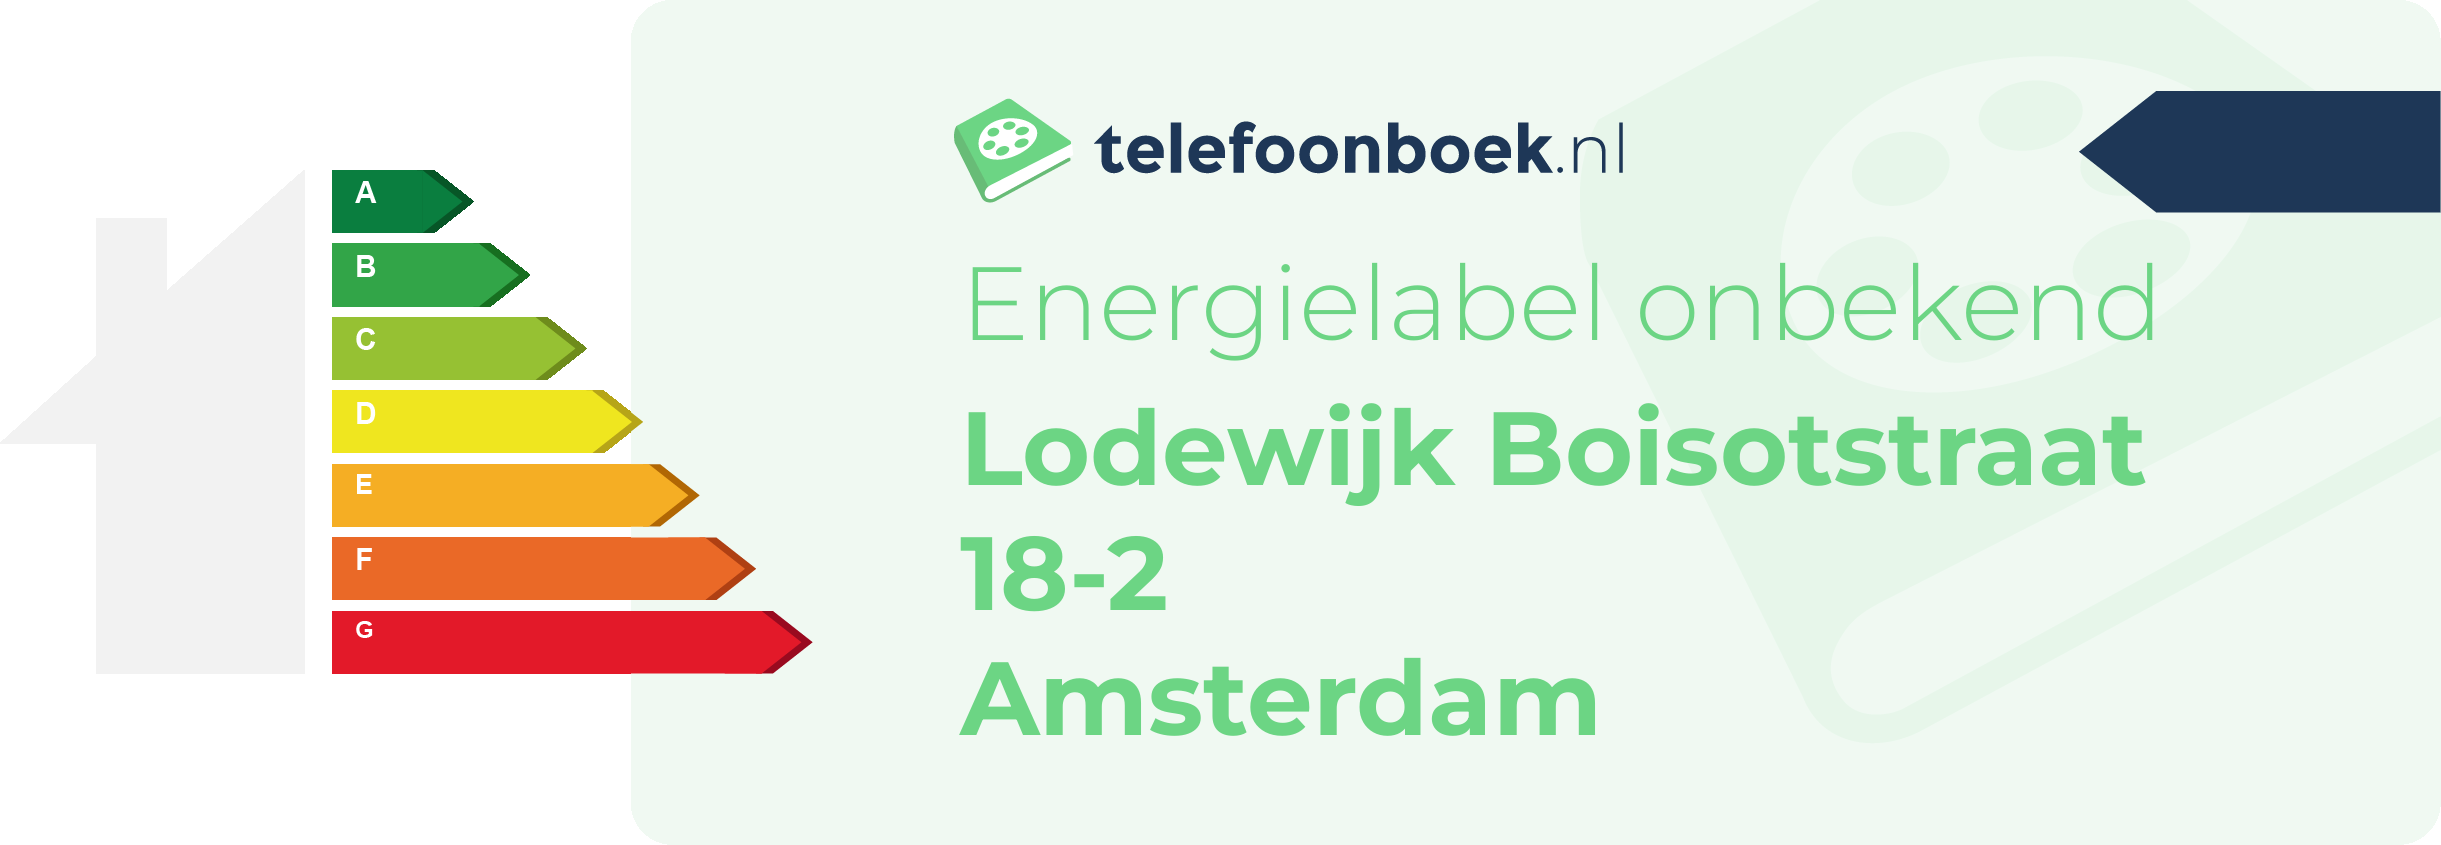 Energielabel Lodewijk Boisotstraat 18-2 Amsterdam